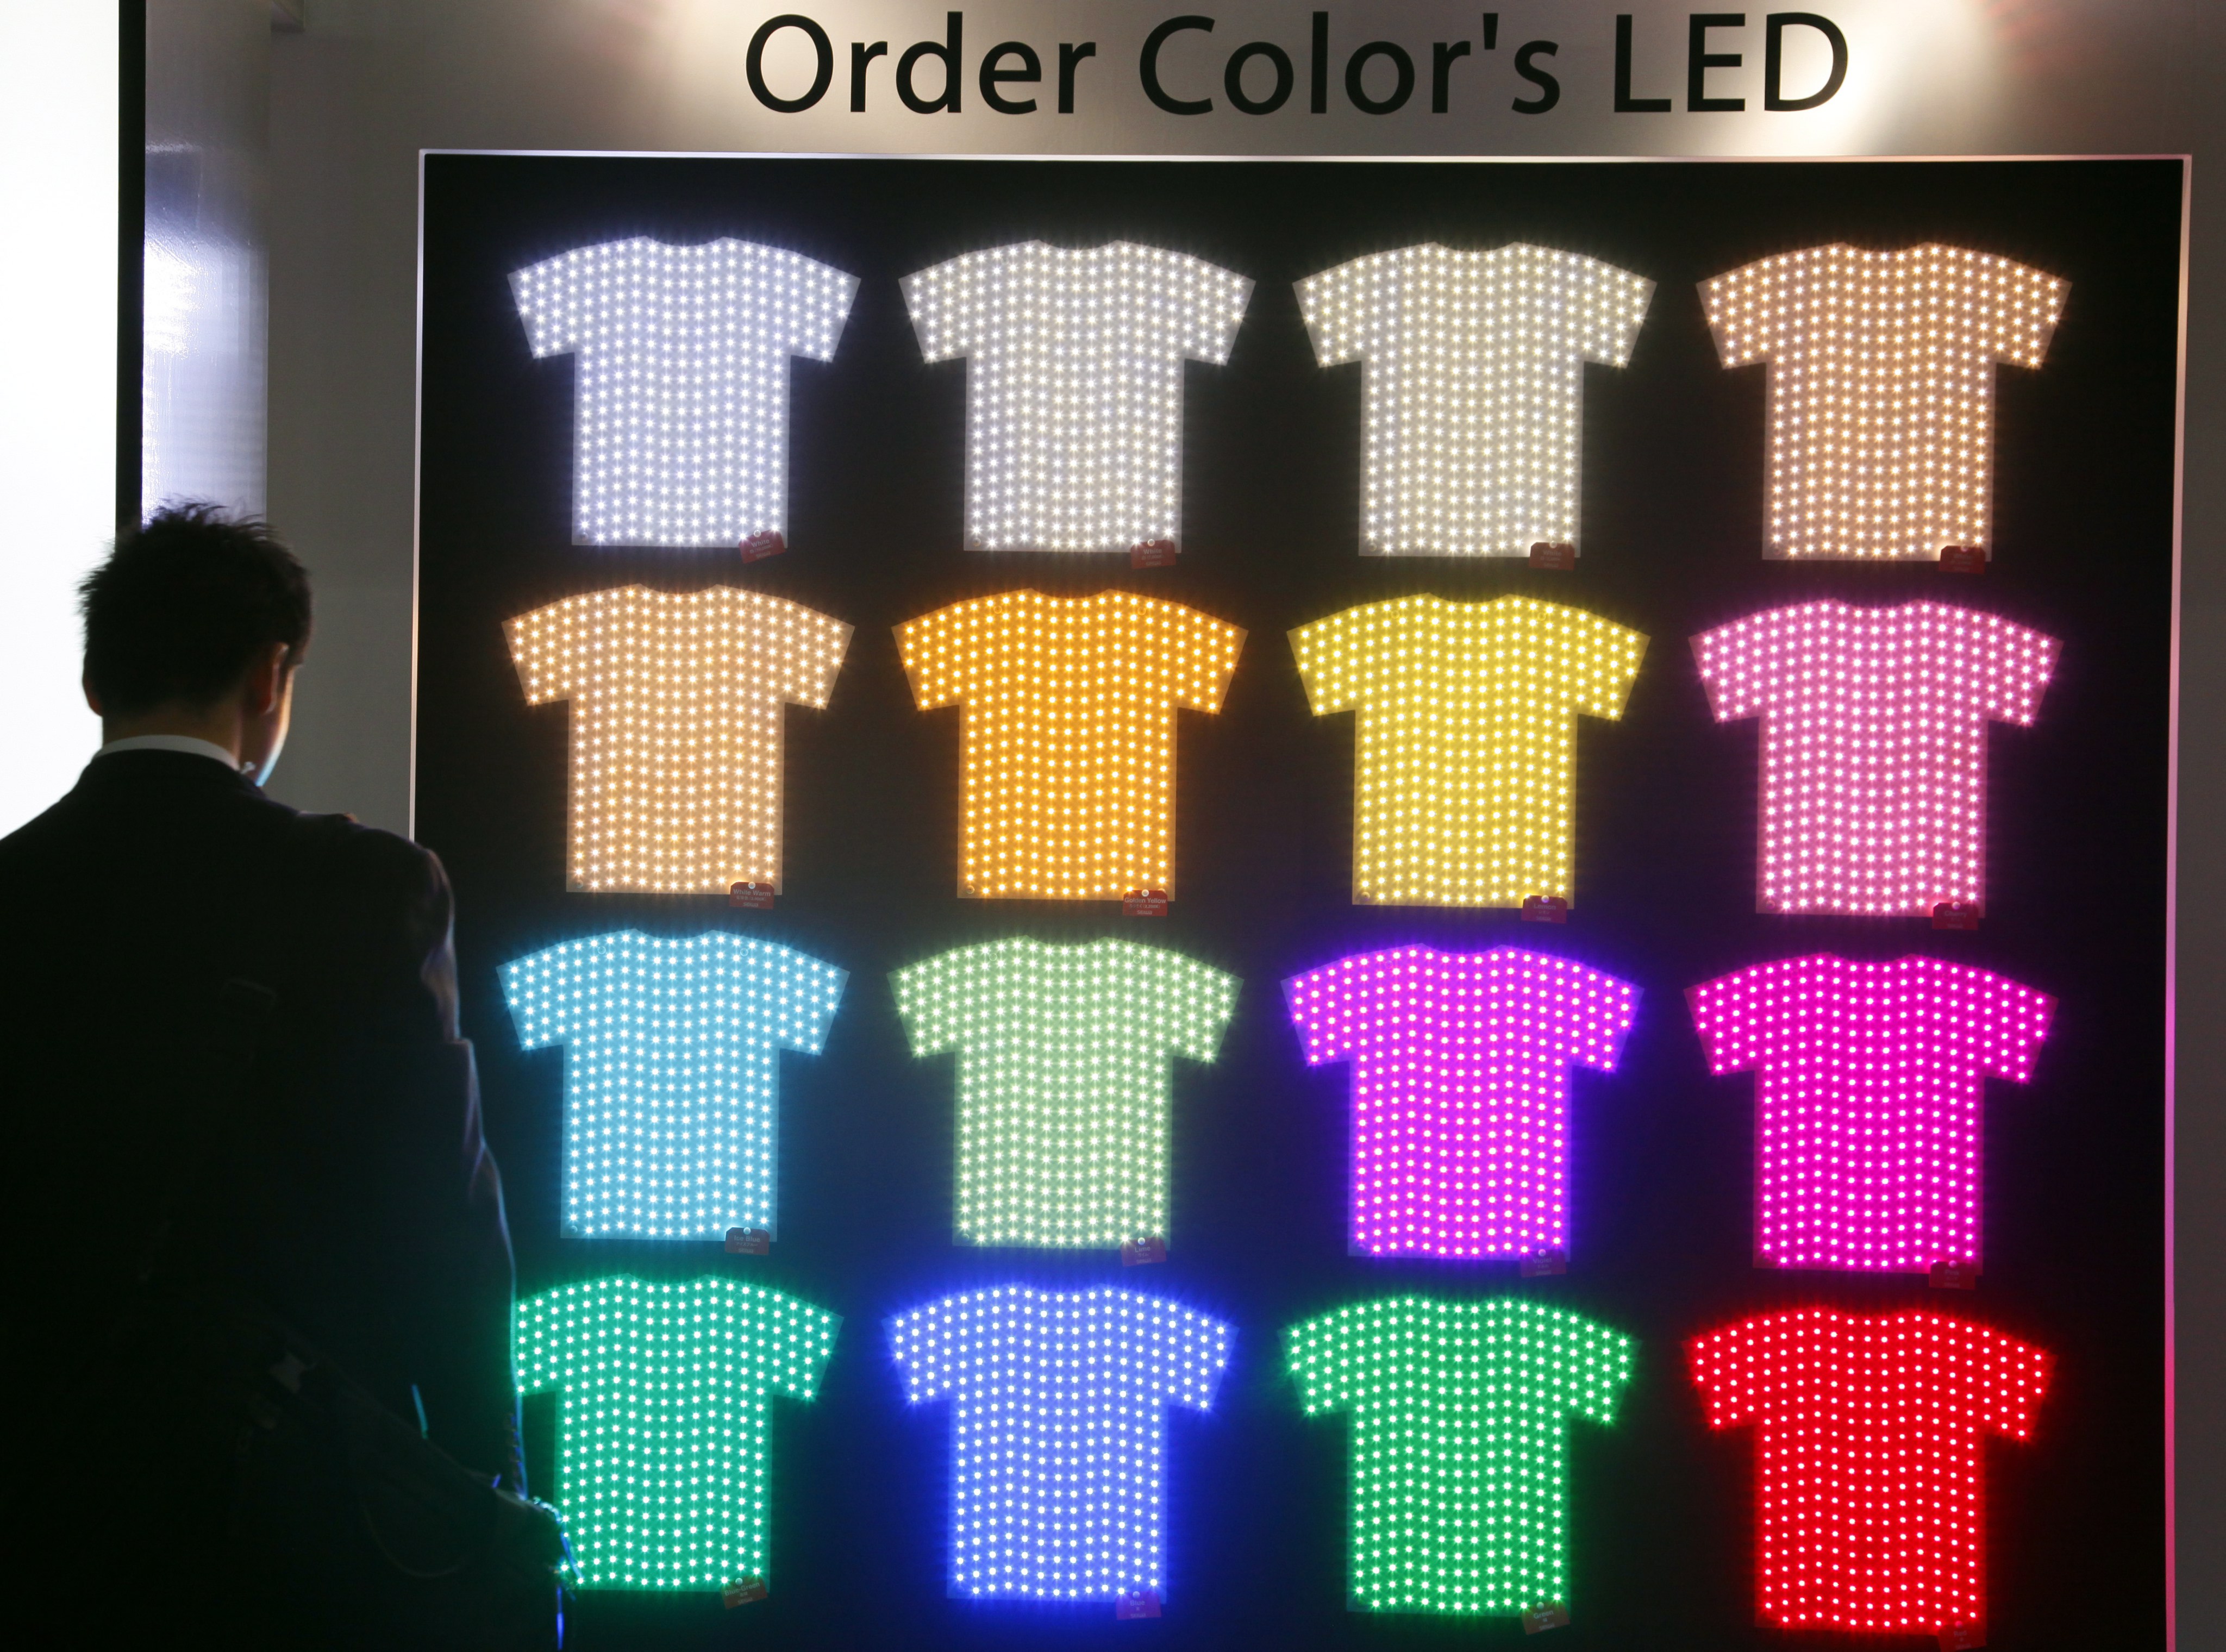 Конкуренцията сред производителите на LED продукти се изостри под натиска на китайски играчи